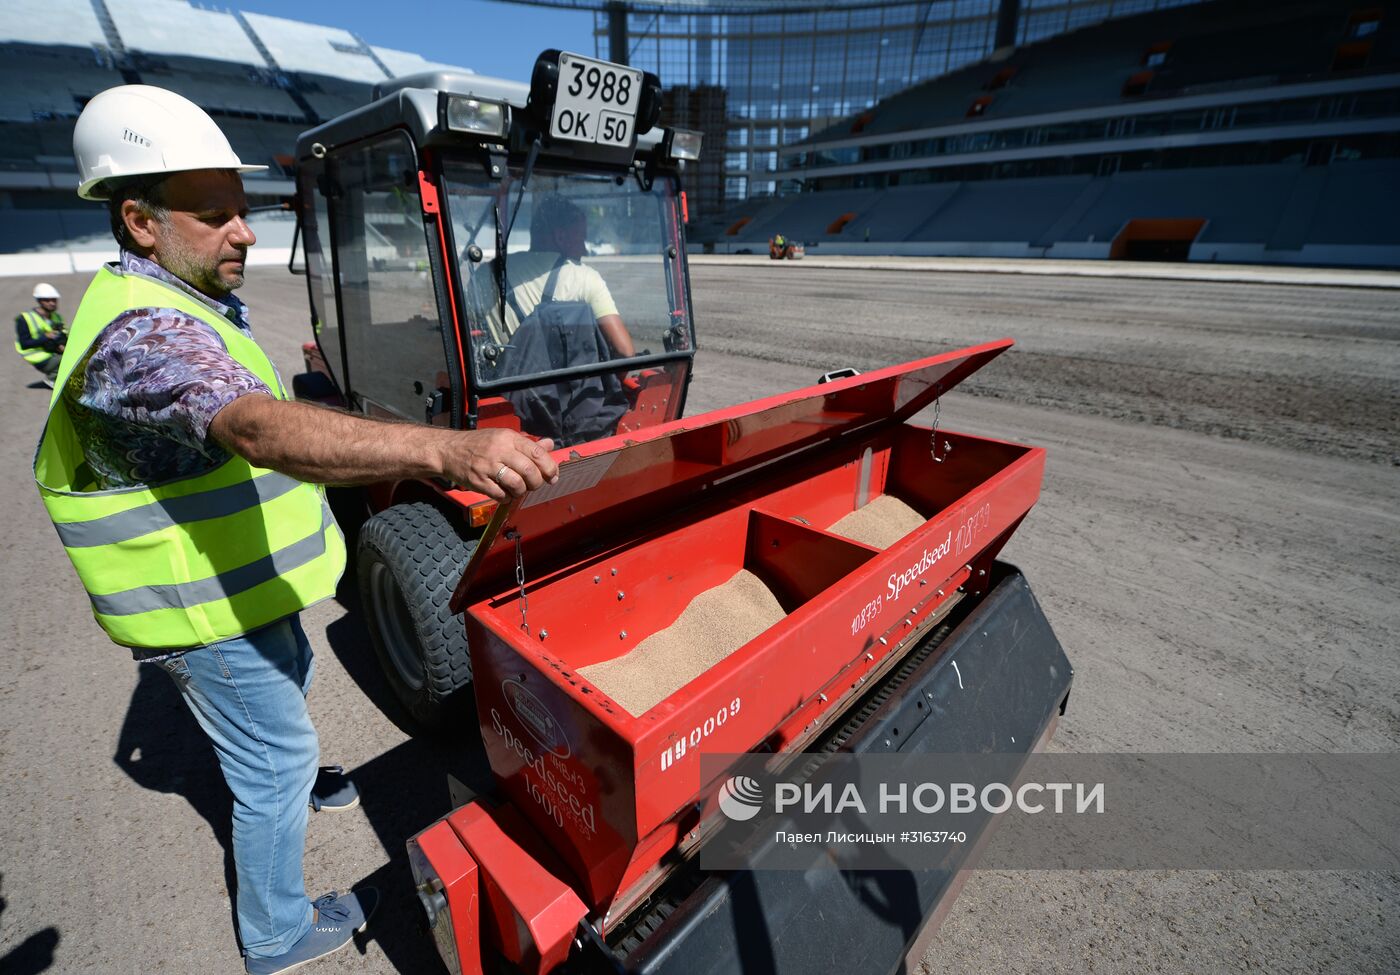 Реконструкция Центрального стадиона в Екатеринбурге к ЧМ-2018